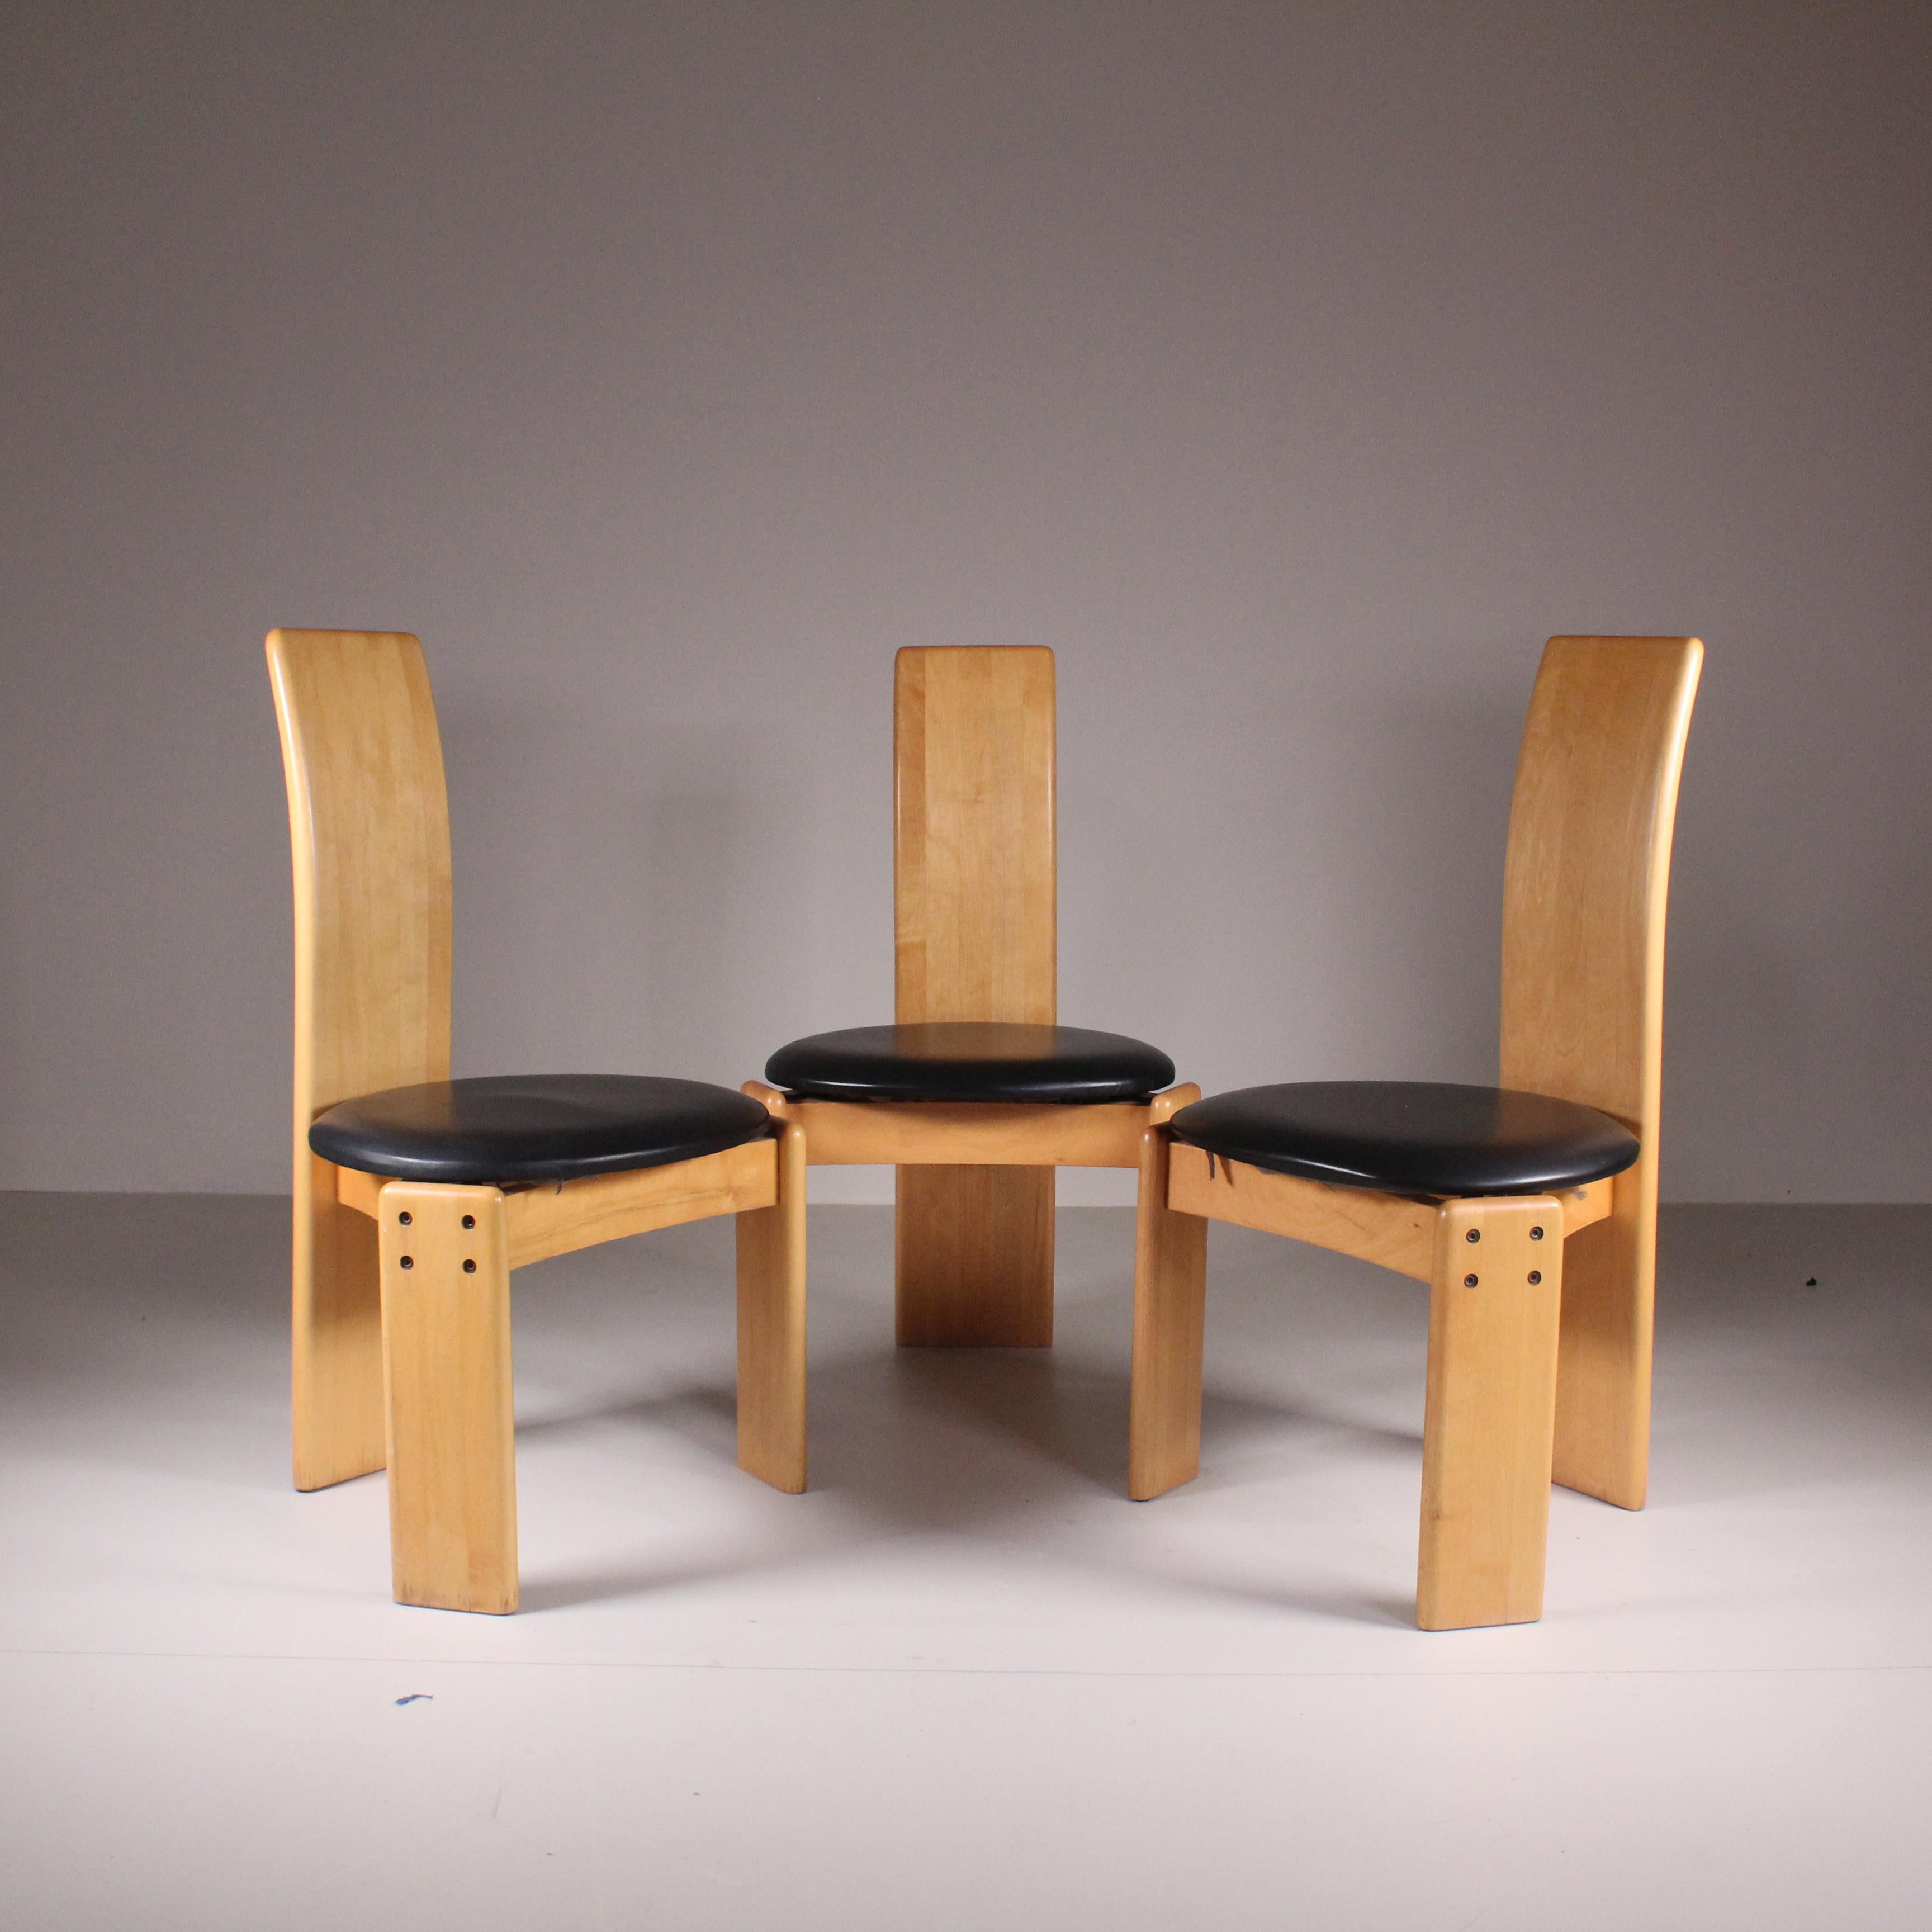 Eleva il tuo spazio con le esclusive sedie di Mario Marenco per MobilGirgi. Design sofisticato, comfort lussuoso e bellezza duratura ti aspettano. Scopri la perfetta fusione di eleganza e funzionalità. Costruite con materiali di alta qualità, queste